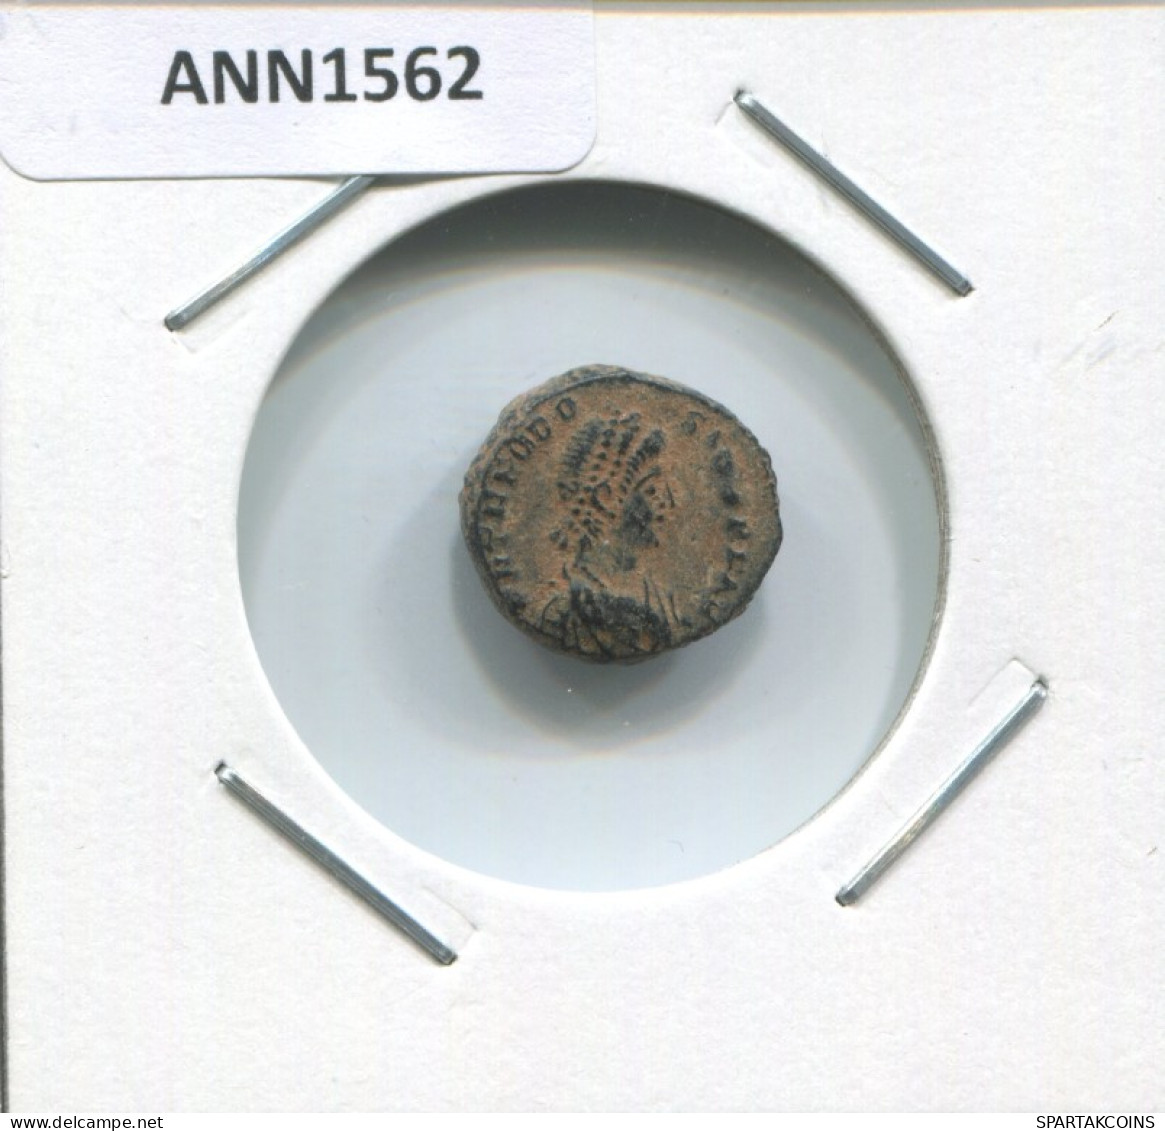 THEODOSIUS I AD379-383 VOT X MVLT XX 1.8g/14mm ROMAN EMPIRE #ANN1562.10.F.A - Der Spätrömanischen Reich (363 / 476)